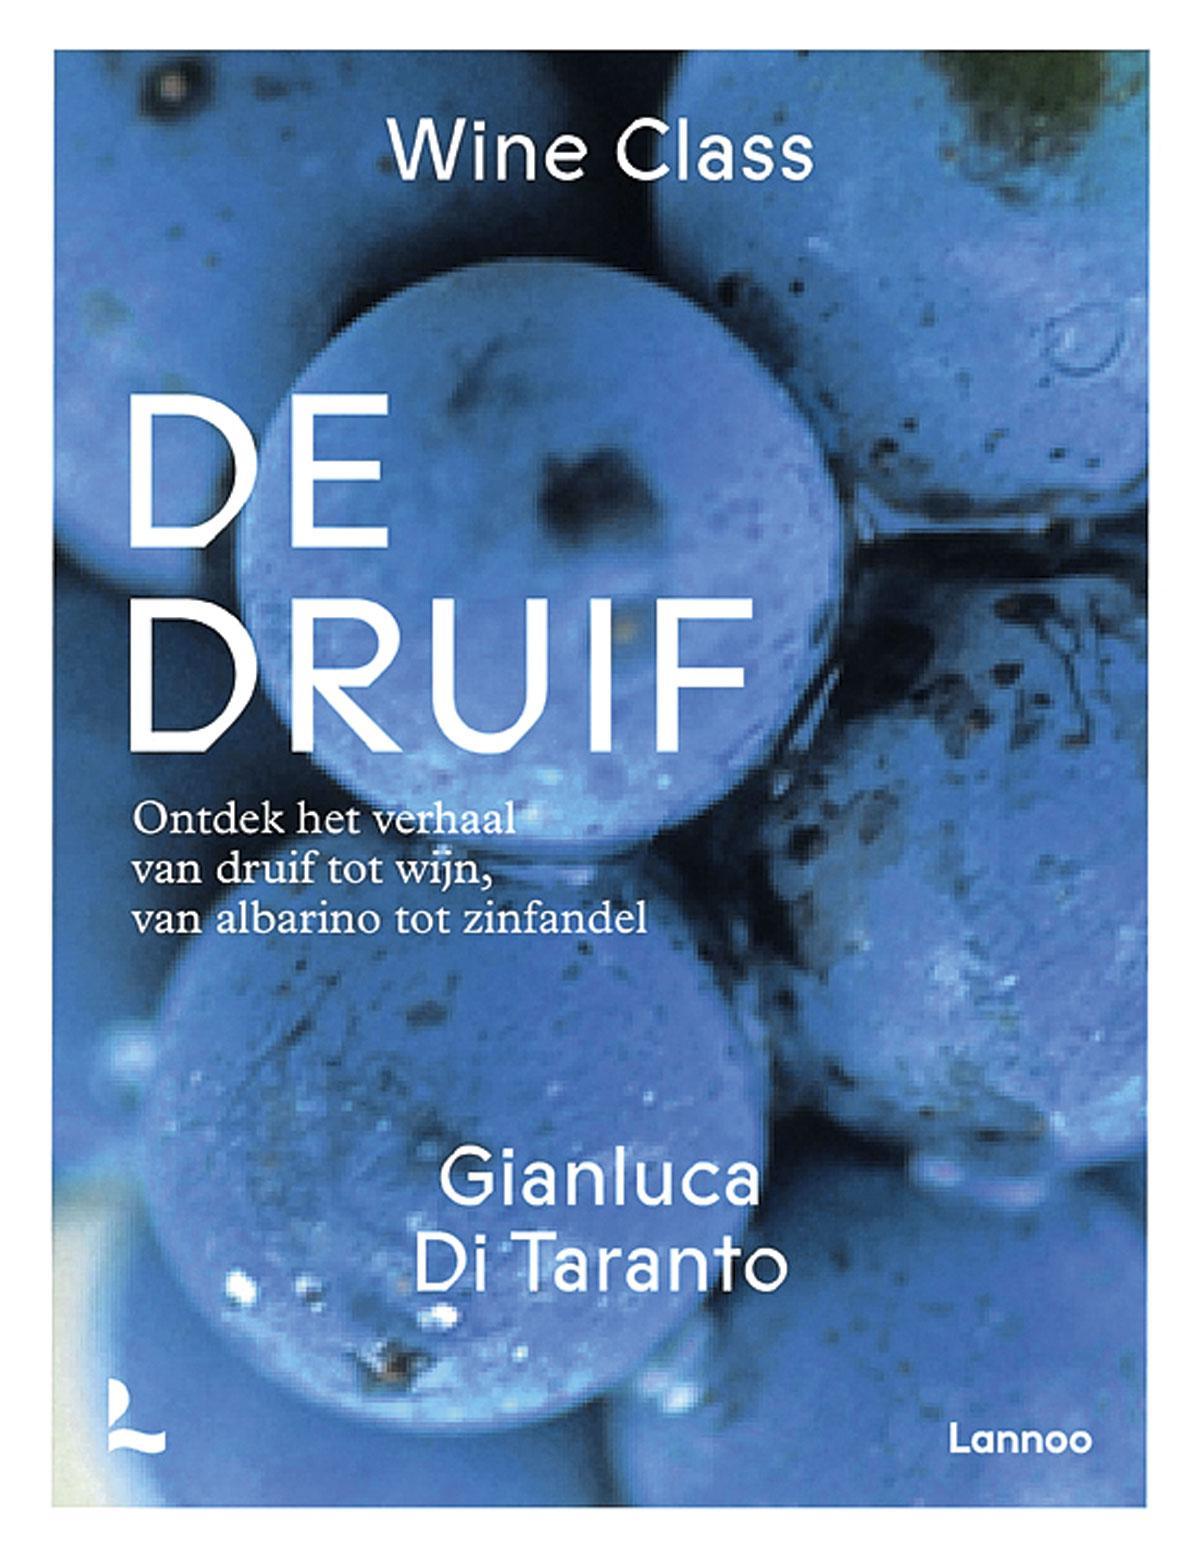 De druif, Gianluca Di Taranto, uitgeverij Lannoo.